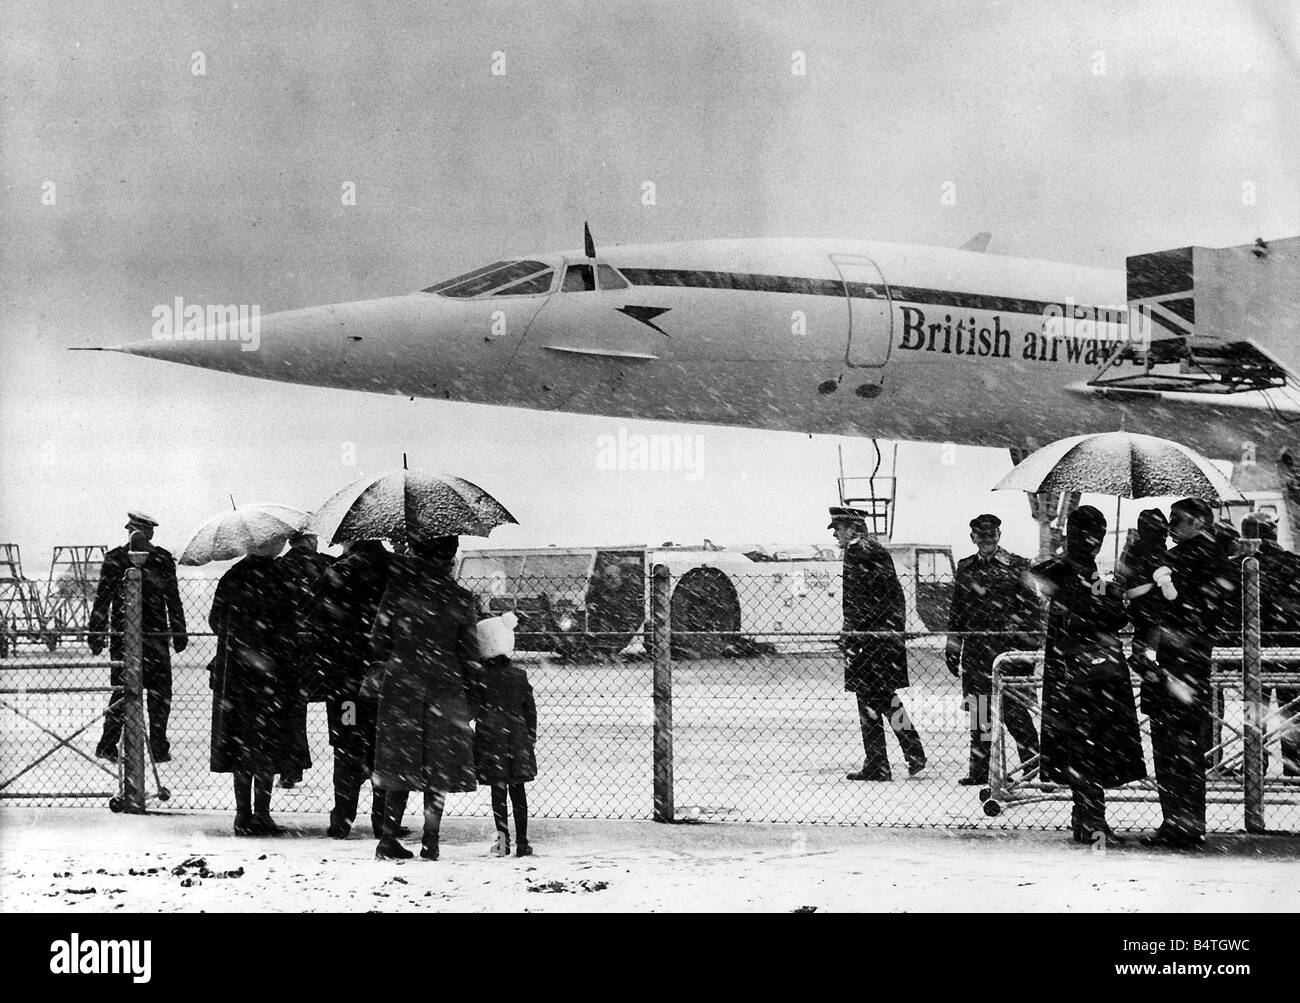 Concorde sur le point de quitter l'aéroport d'Heathrow à la neige avec la reine et le duc d'Édimbourg à bord pour Bahreïn au début de la Reine s tournée au Moyen-Orient Février 1979 Banque D'Images